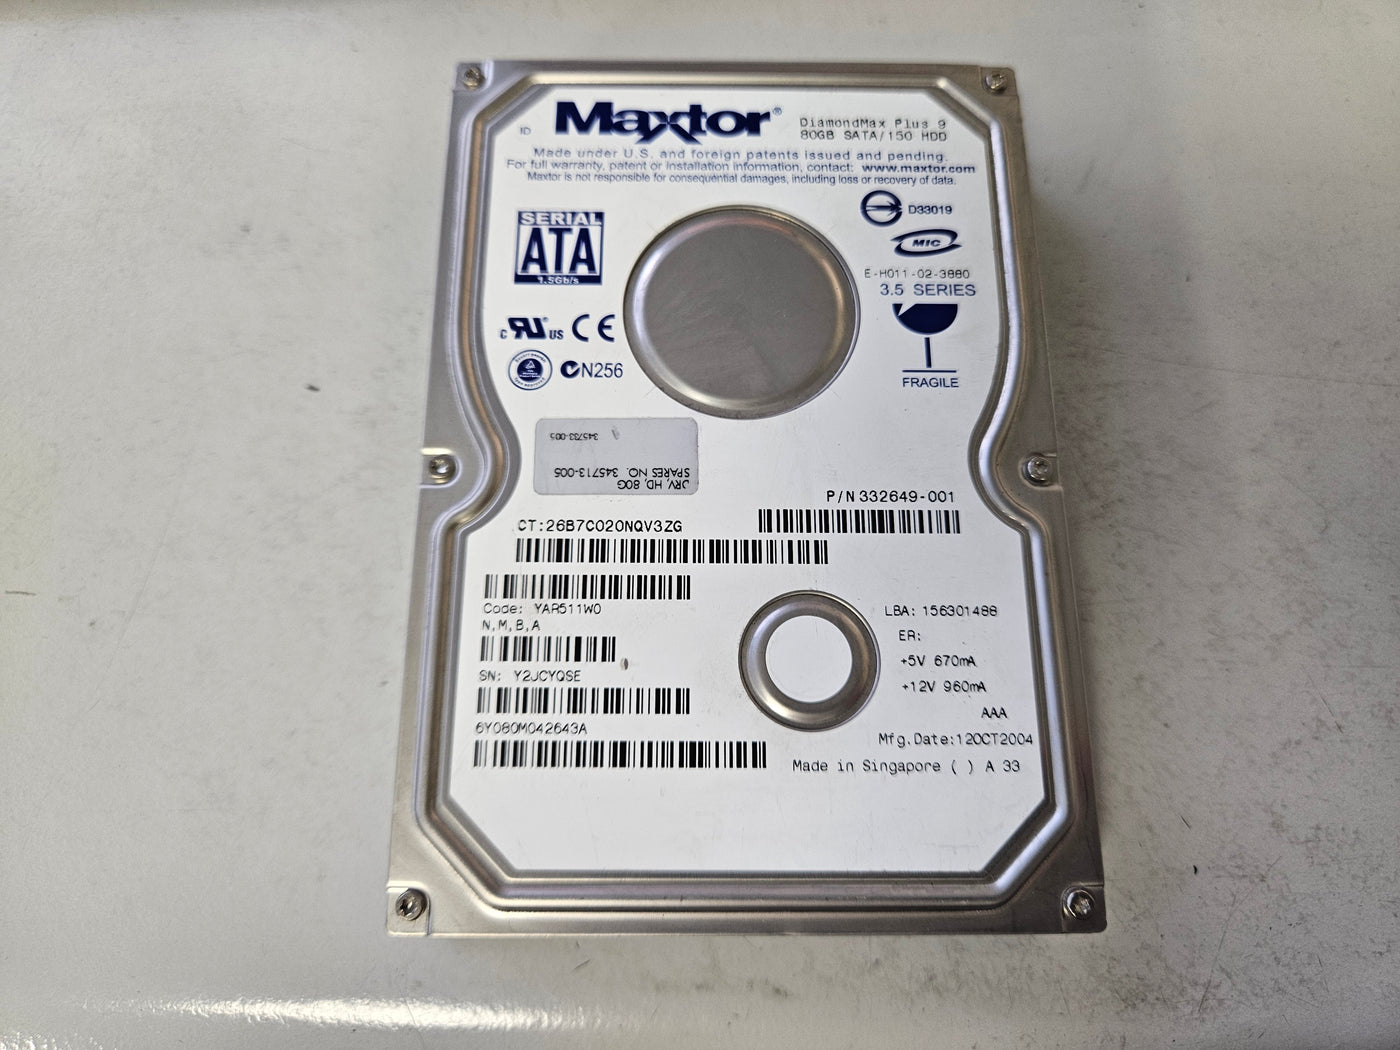 Maxtor HP 80Gb SATA 7200rpm 3.5in HDD ( 6Y080M0 332649-001 345713-005 ) REF